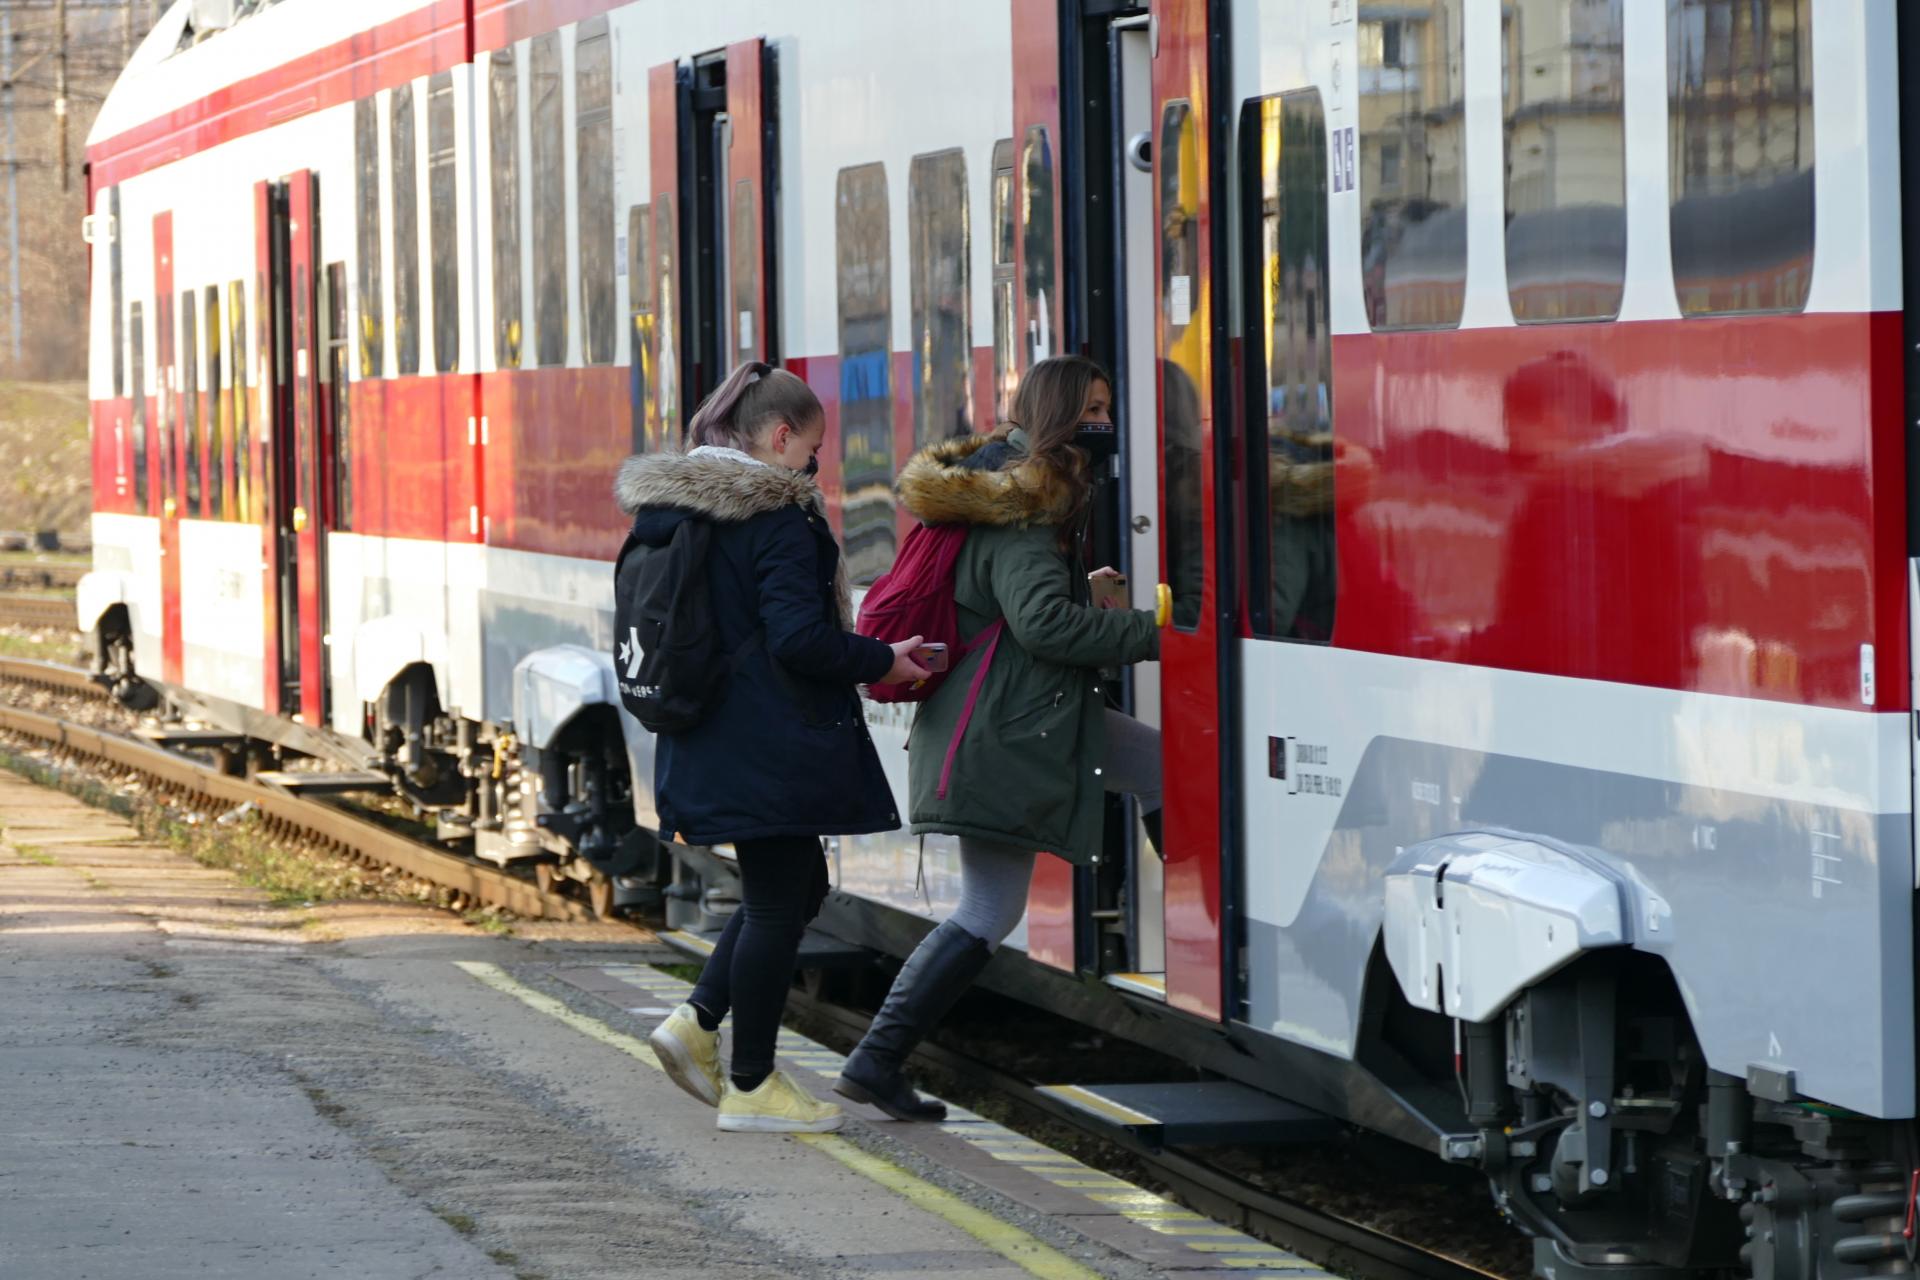 Železničná spoločnosť Slovensko môže usporiť či využiť efektívnejšie 130 miliónov eur, firma závery víta